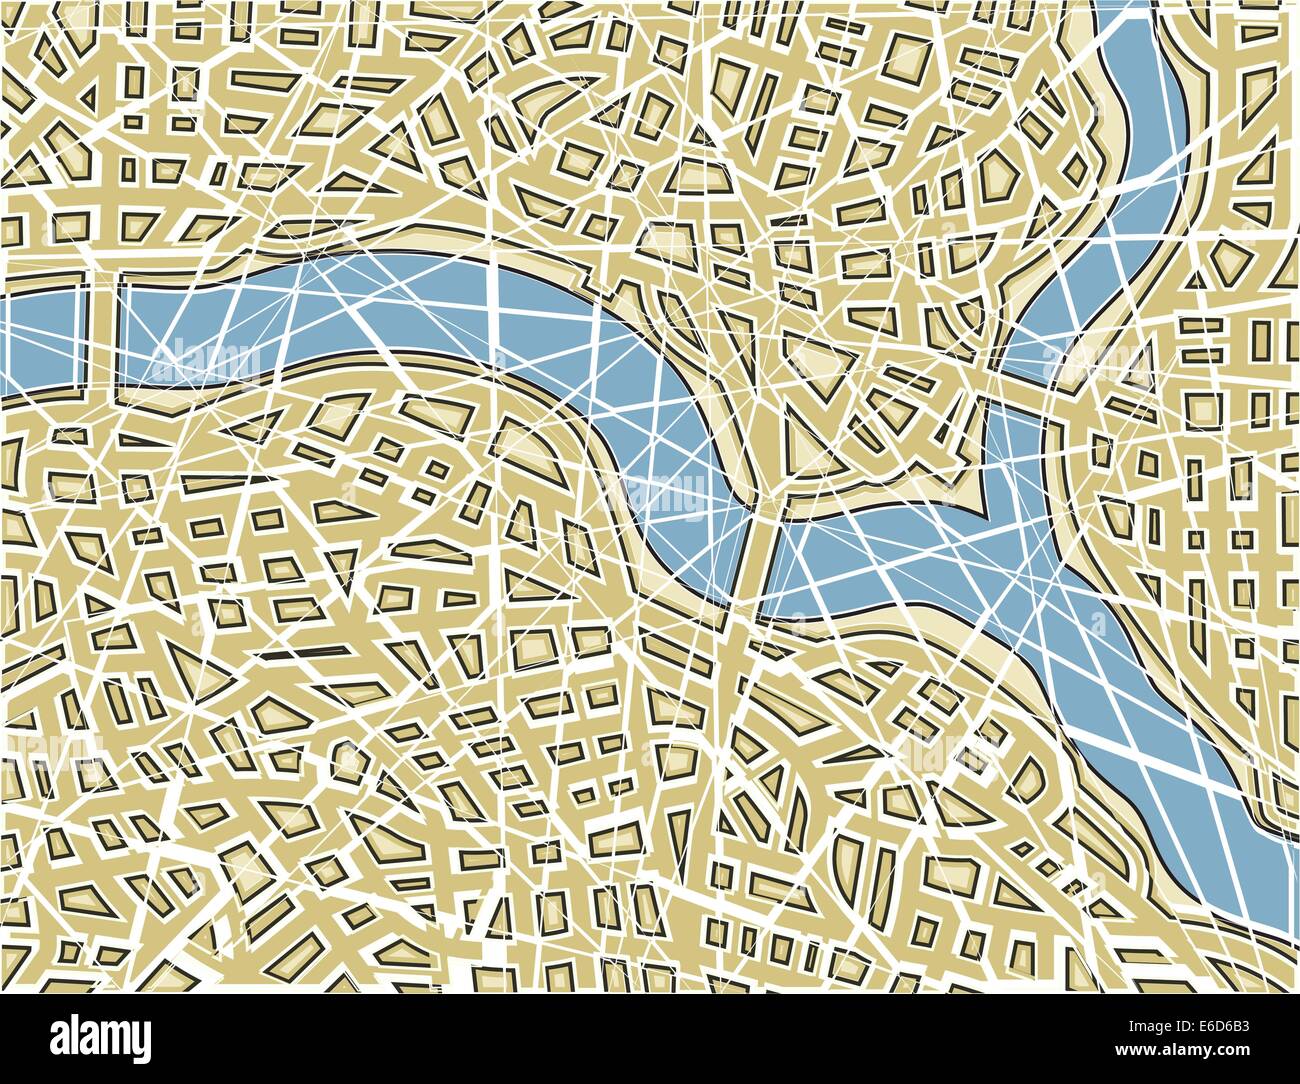 Modificabile illustrazione vettoriale di una generica mappa stradale con nessun nome come un mosaico rotto Illustrazione Vettoriale